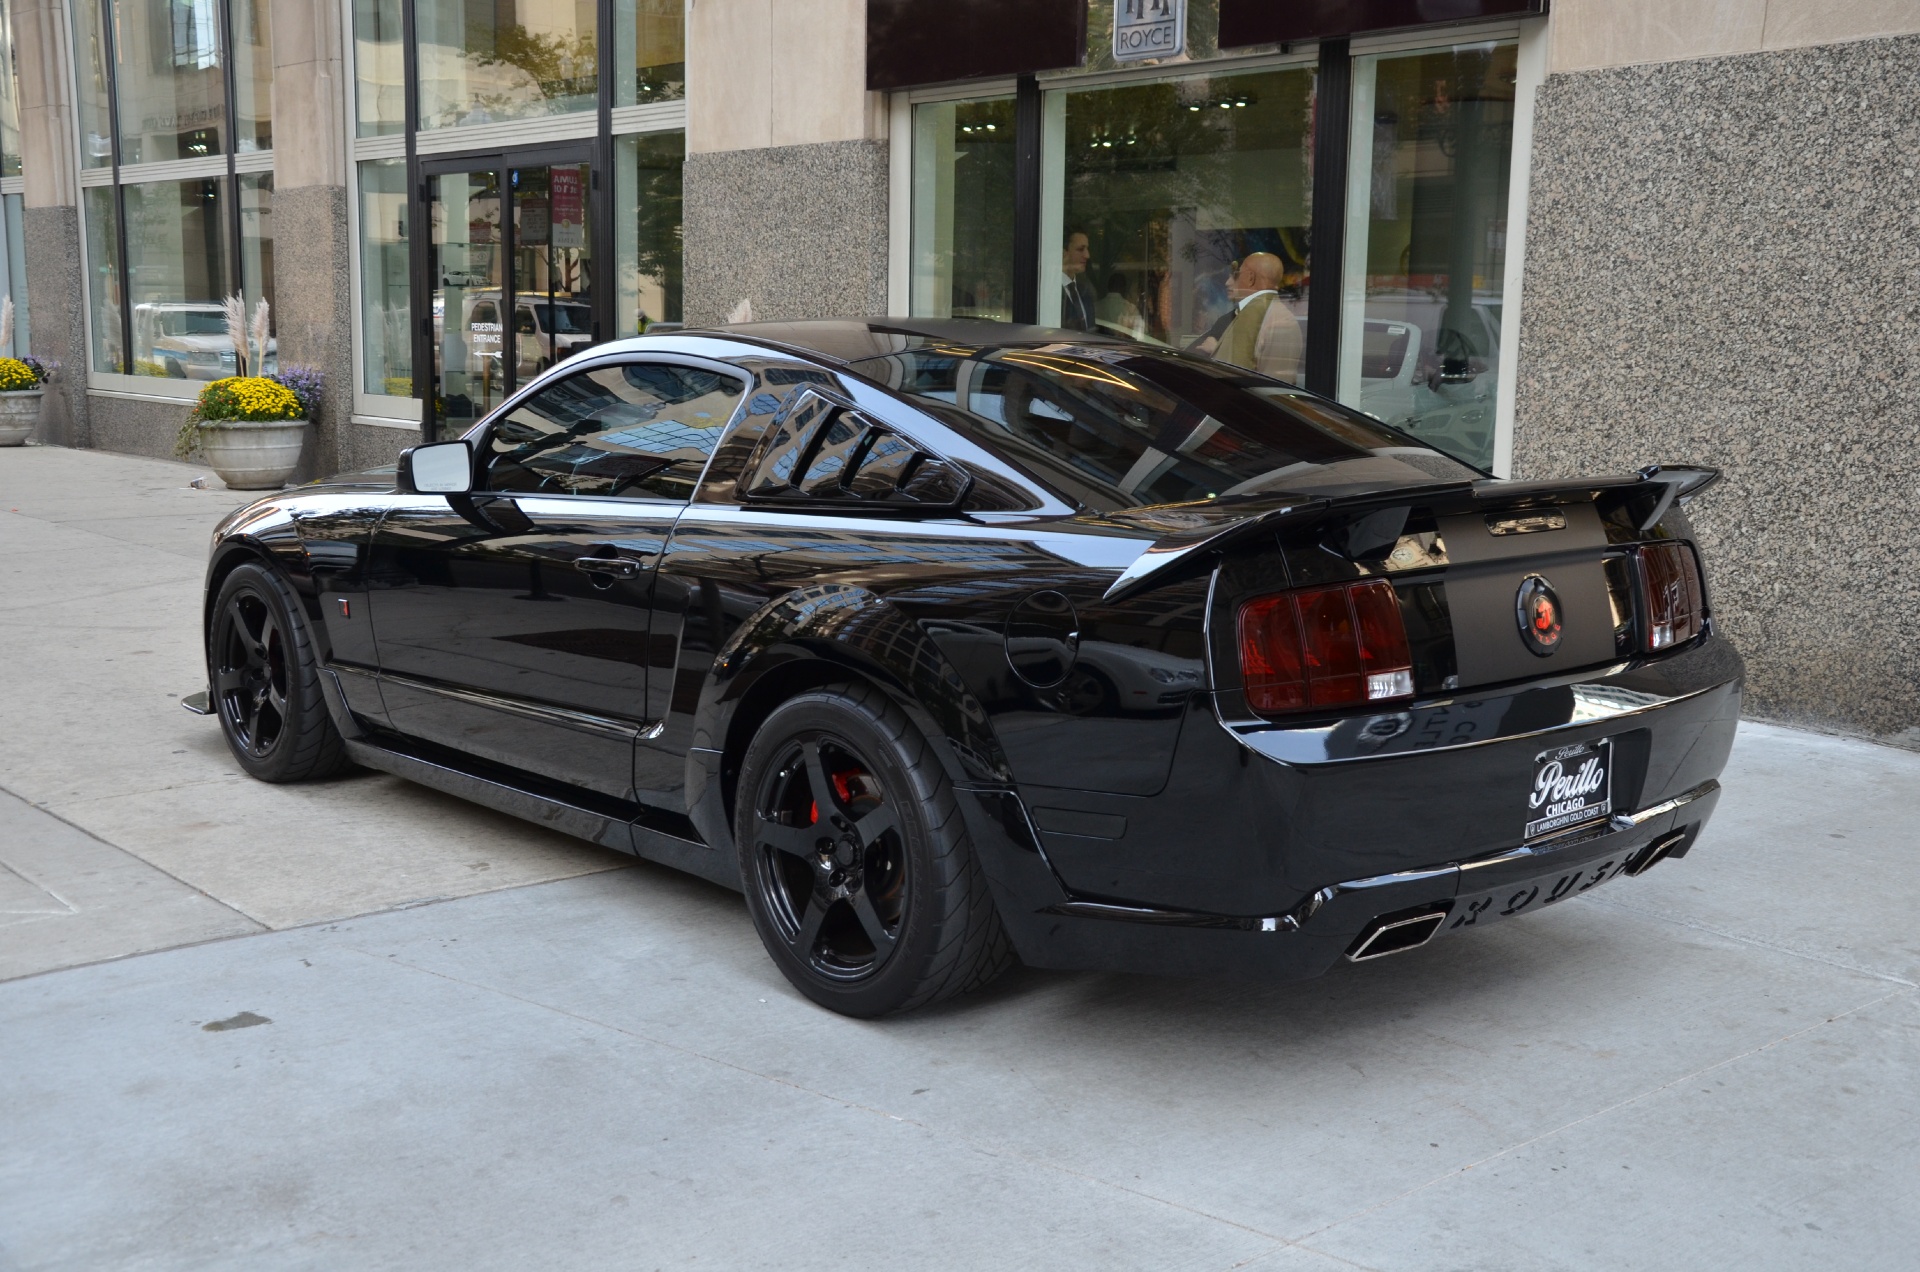 Mustang & chino blac